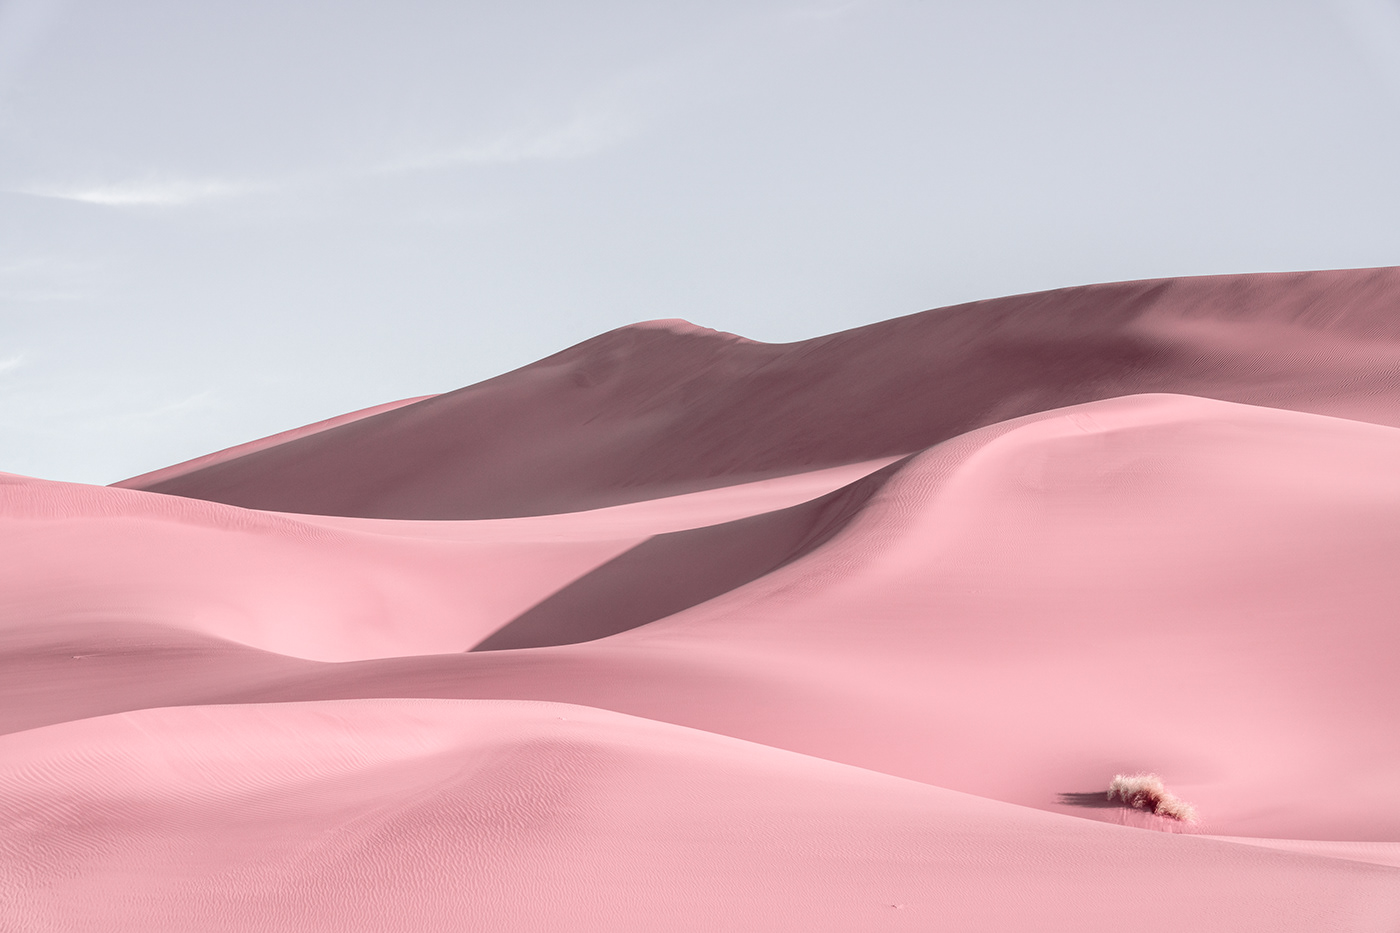 desert Jonas daley Magic Reality pink desert sand hill wallpaper 壁纸  粉色沙漠 魔幻现实 鸣沙山